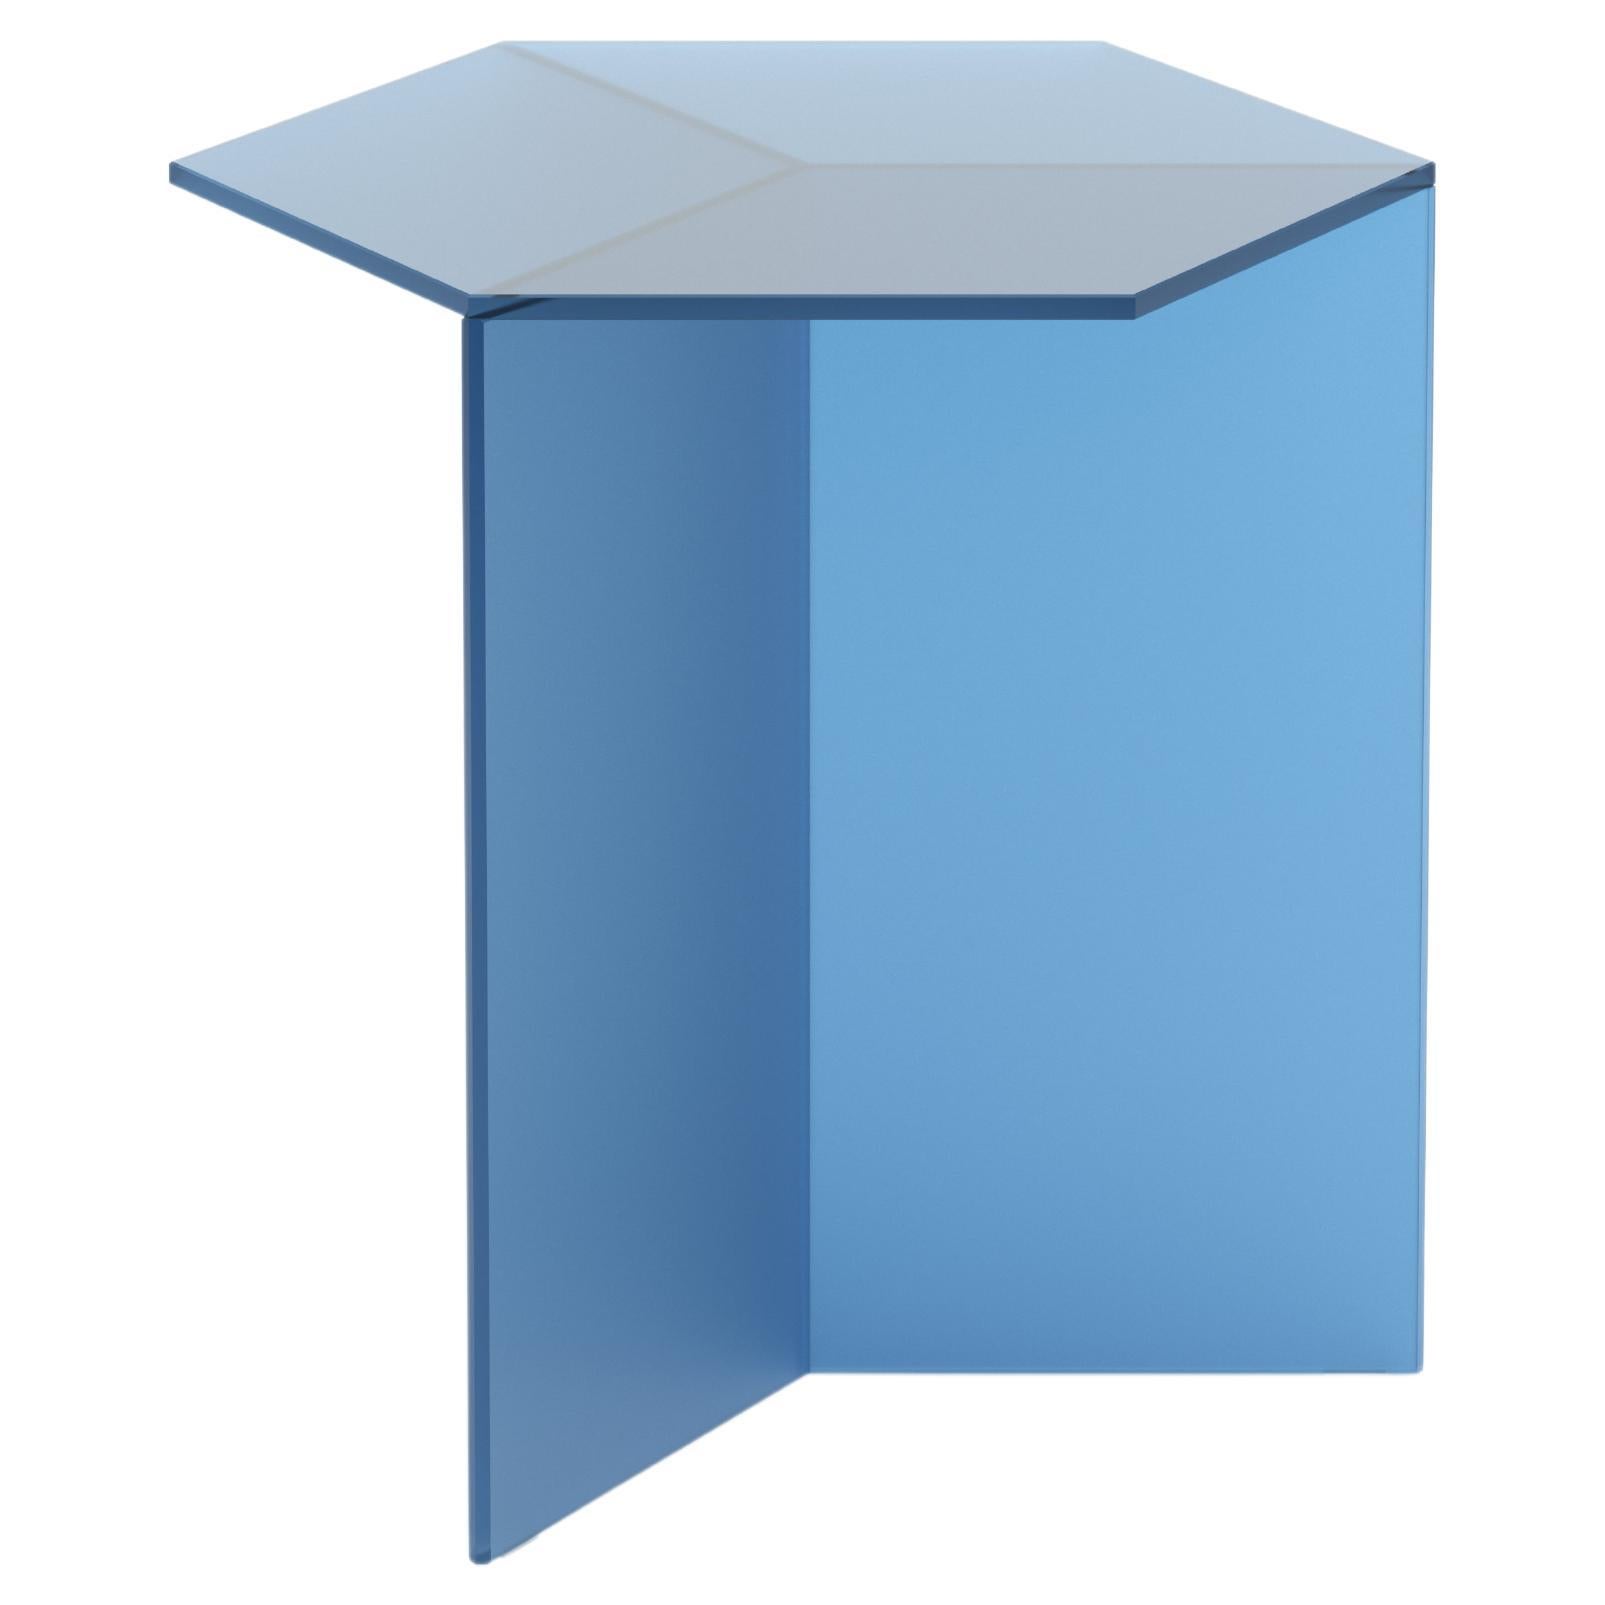 Isom Tall 45 cm Side Table Satin Glass Blue, Sebastian Scherer Neo/Craft For Sale